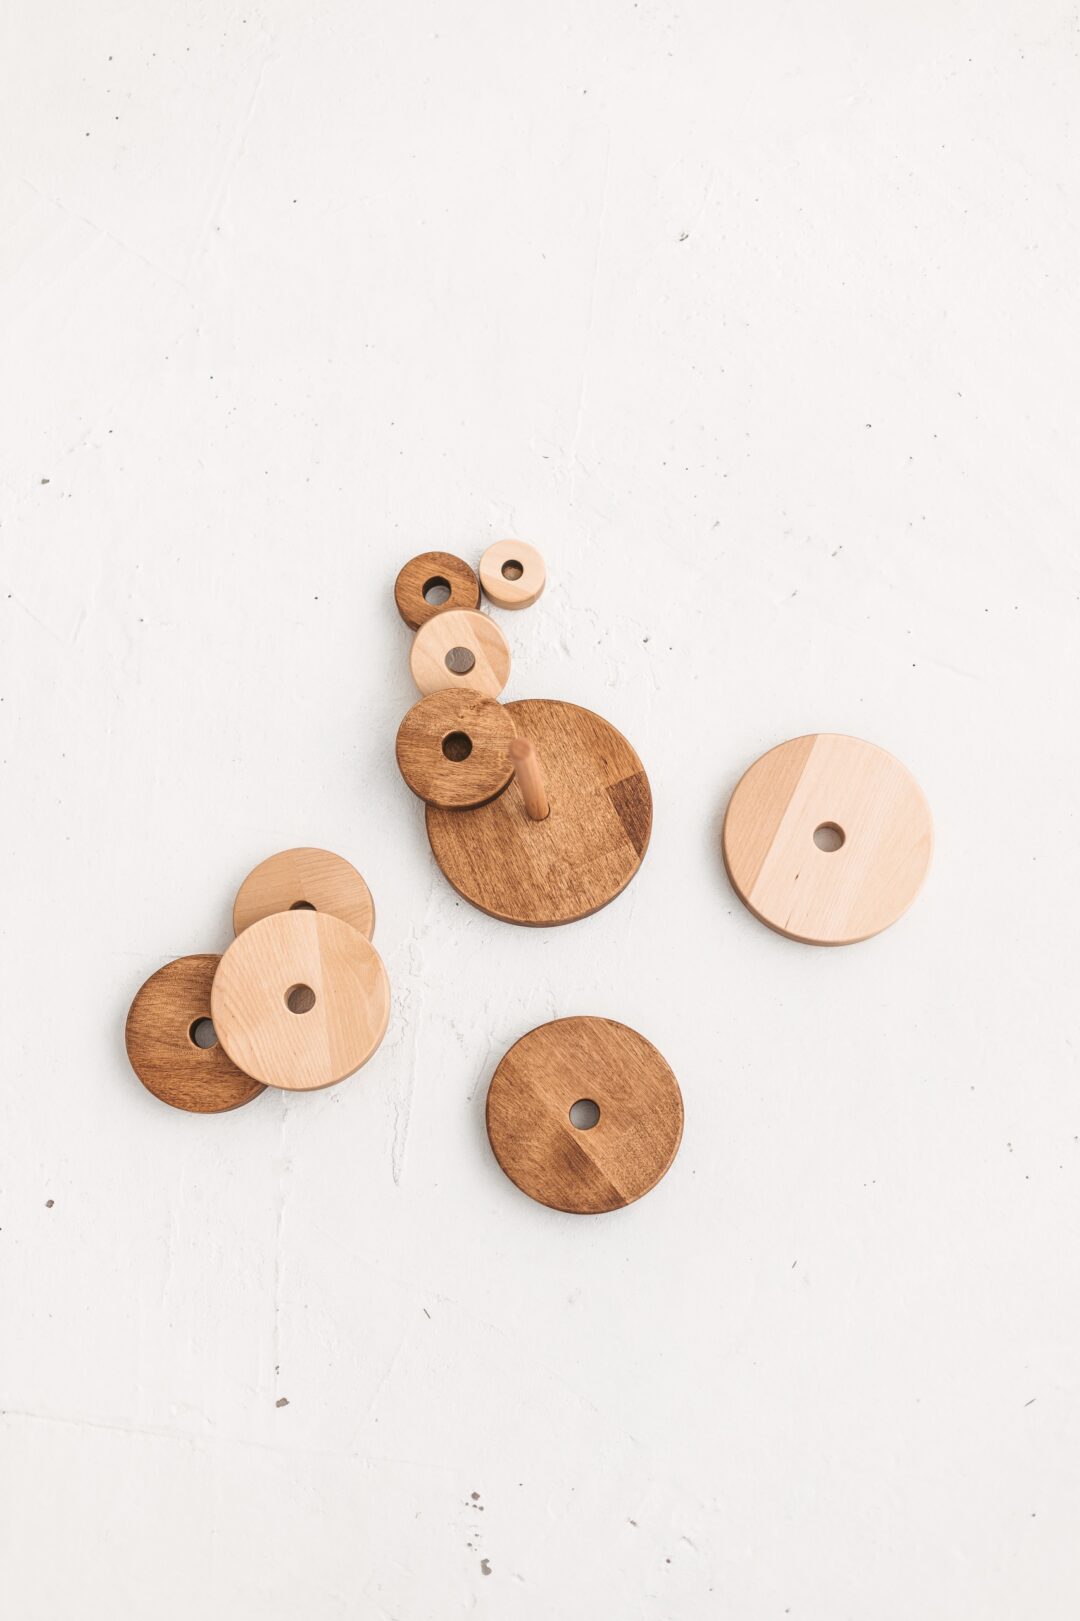 Der traditionelle Montessori-Ringstapler aus Holz ist das beste umweltfreundliche, natürliche und sichere Spielzeug für die frühe Babyentwicklung.